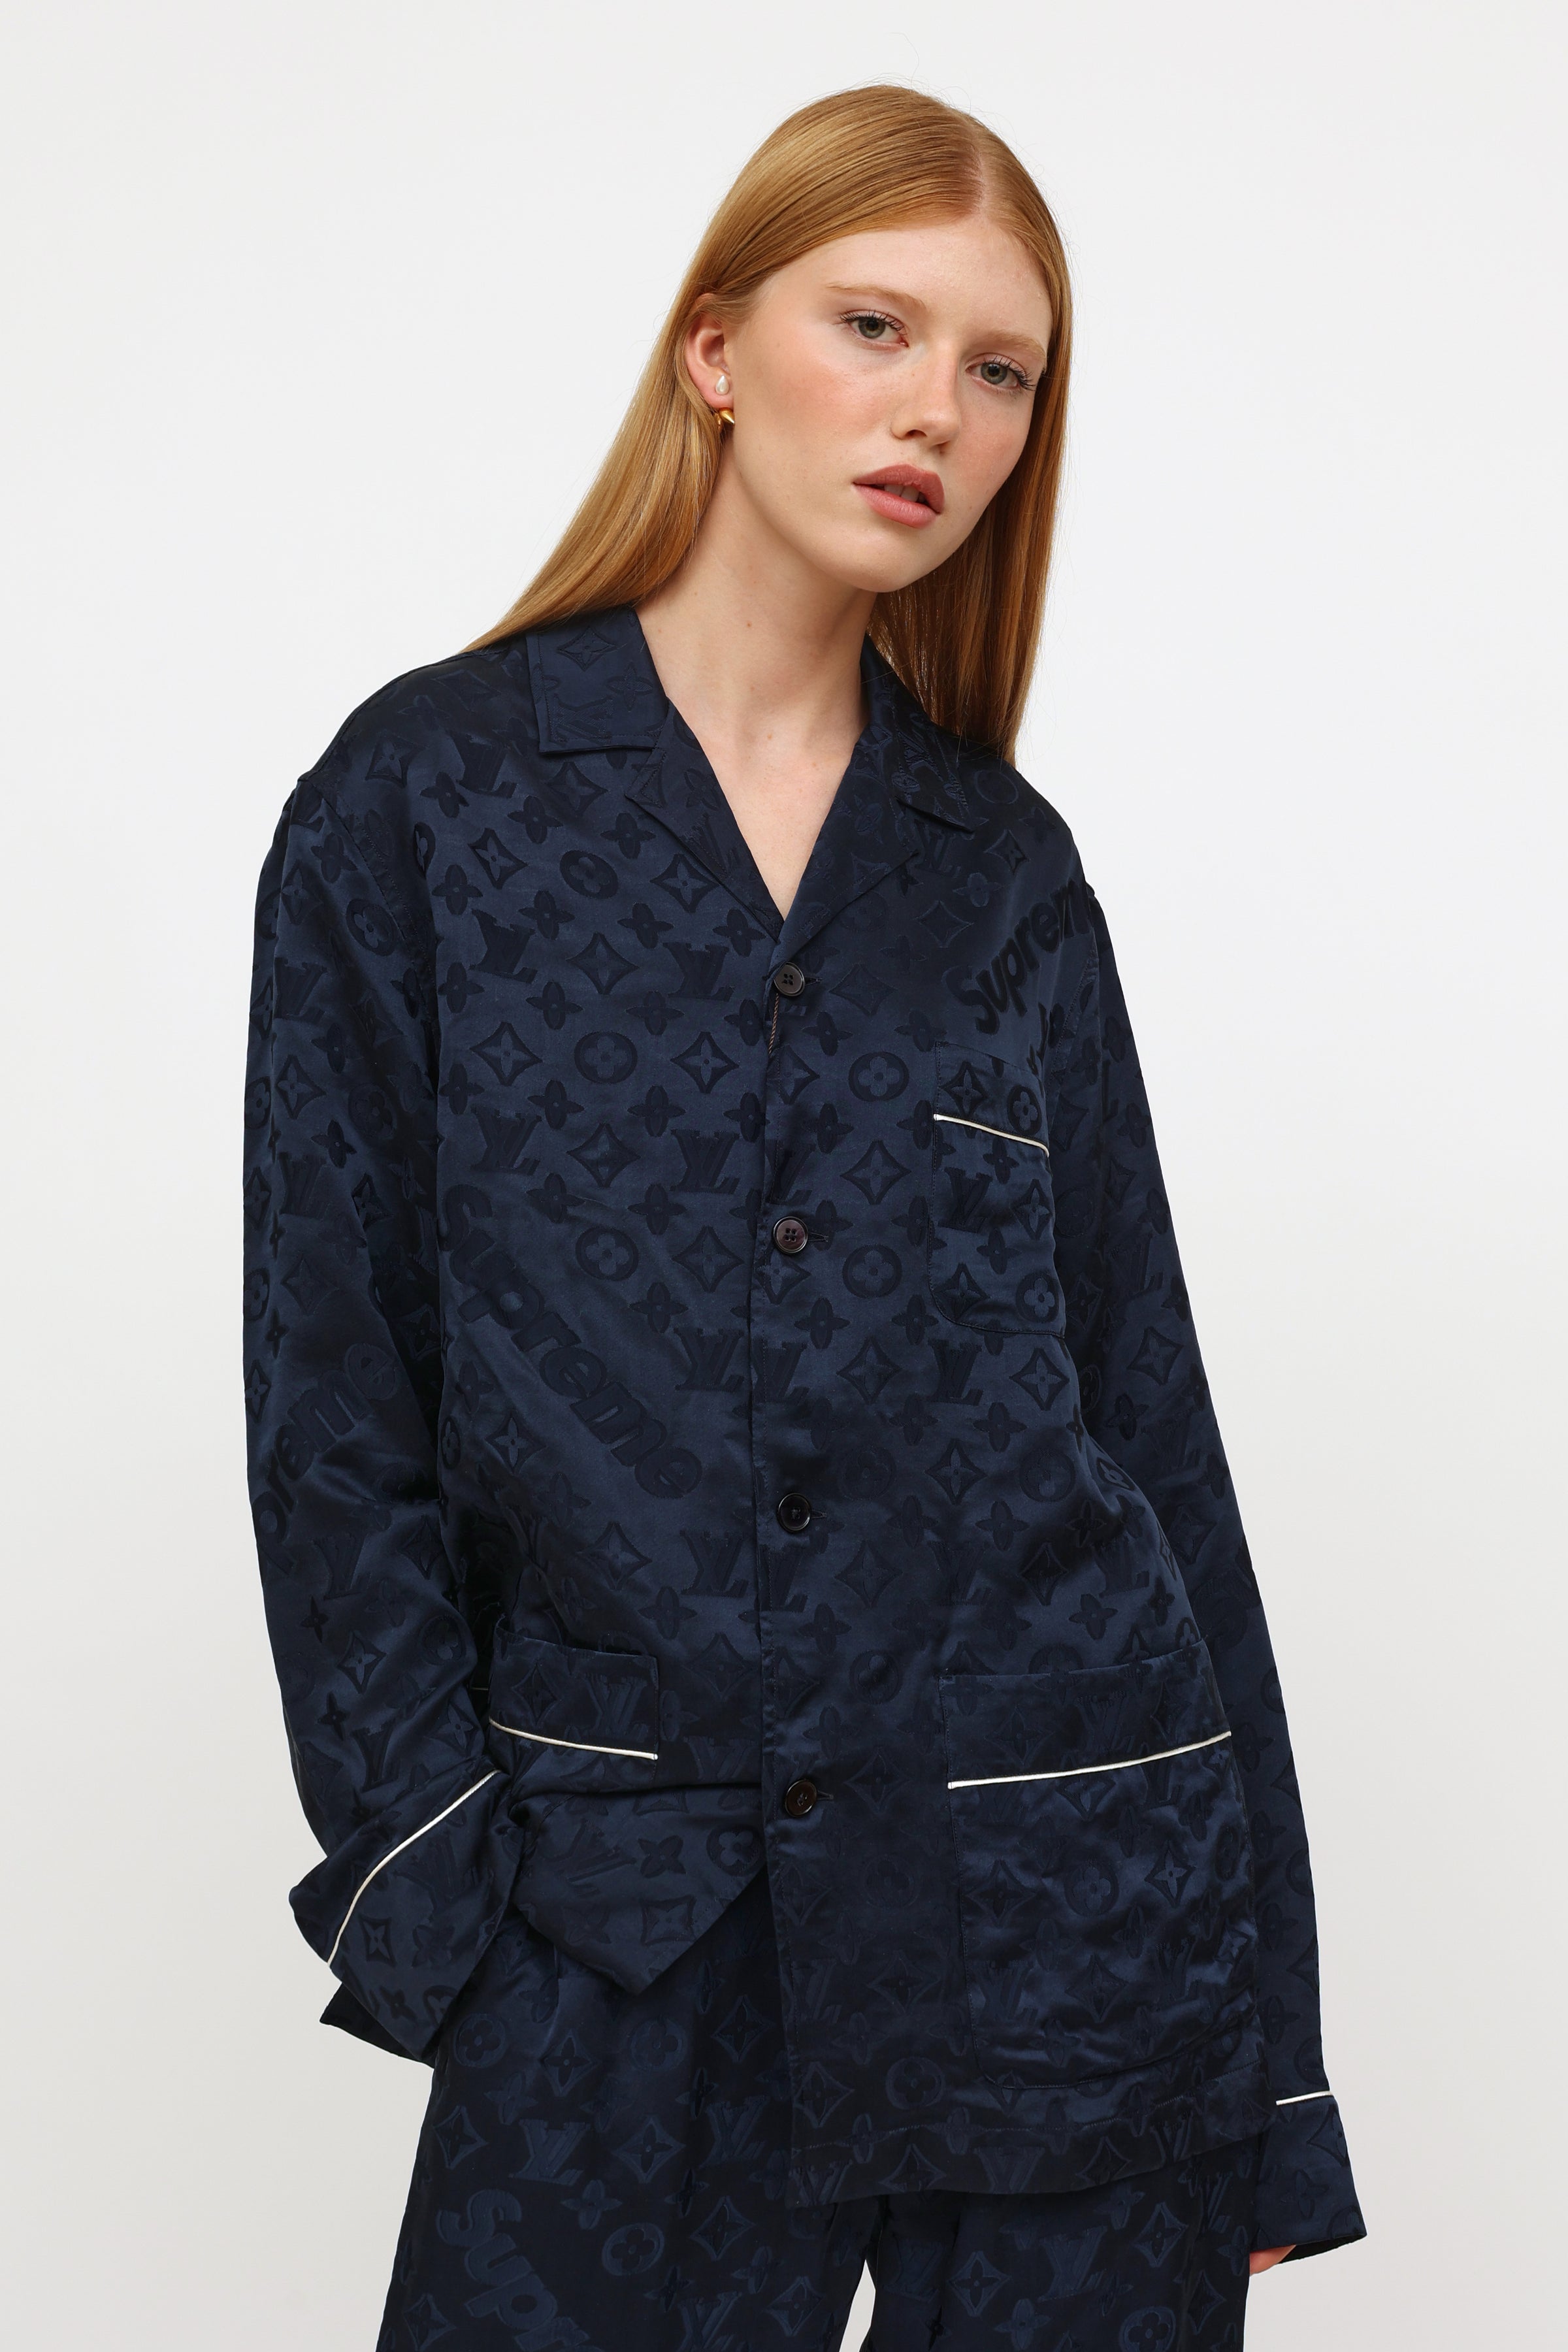 Louis Vuitton Pajamas  Etsy UK